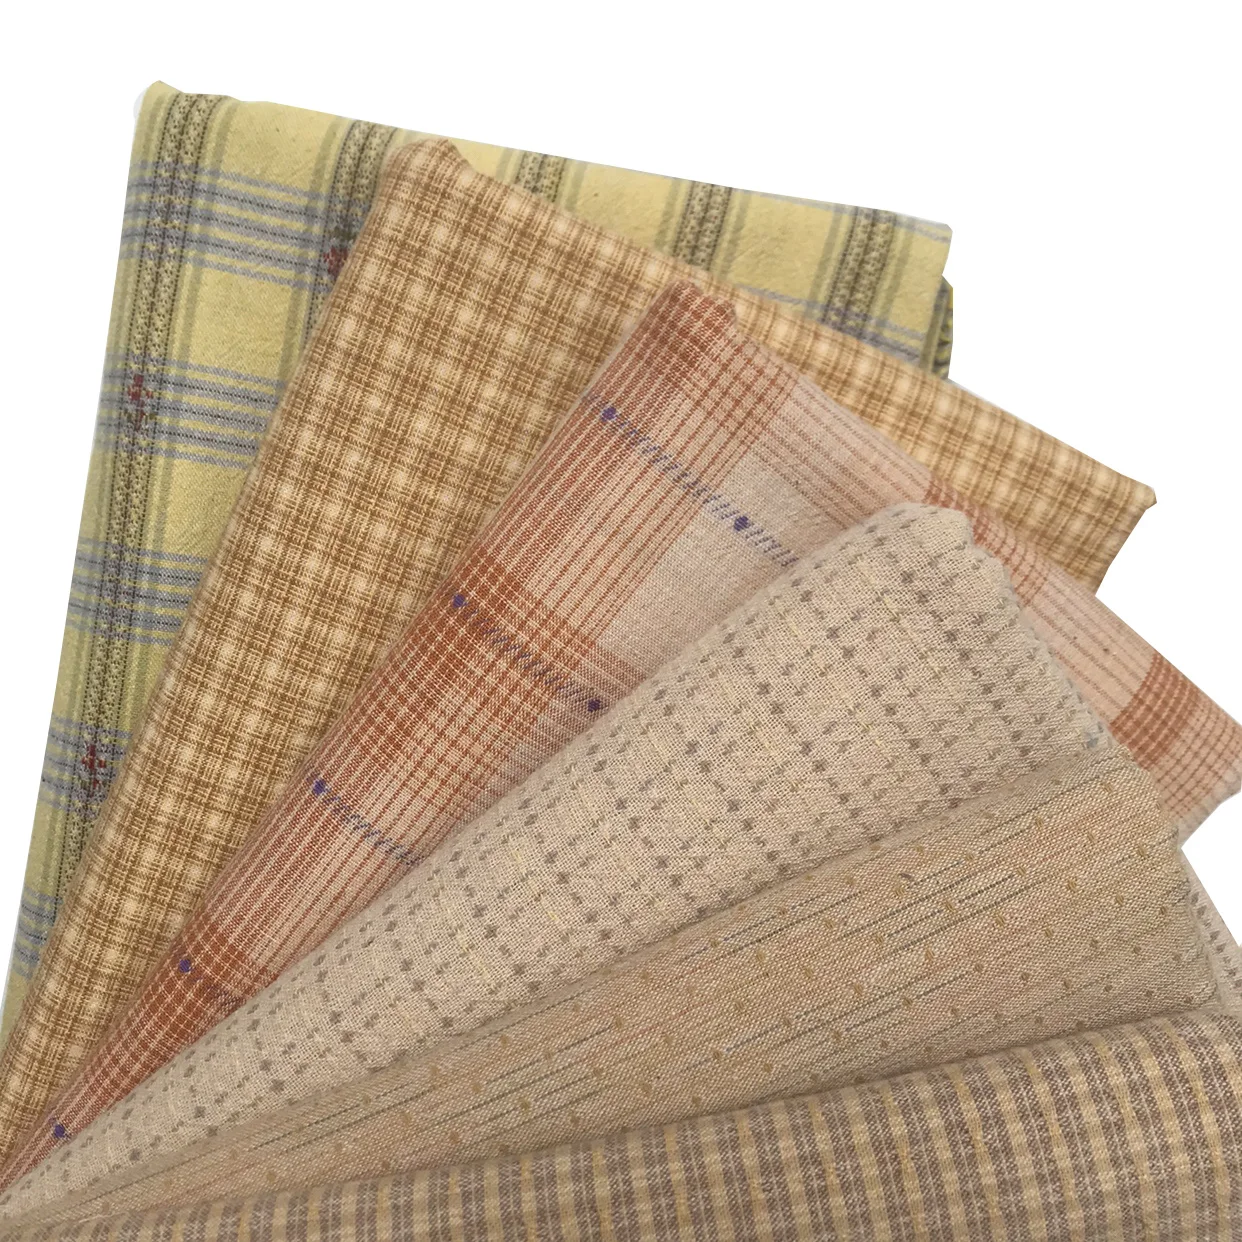 

Японская маленькая тканевая ткань для рукоделия yellow group, окрашенная пряжа, для шитья, лоскутного шитья, квилтинга, в полоску, 50*70 см